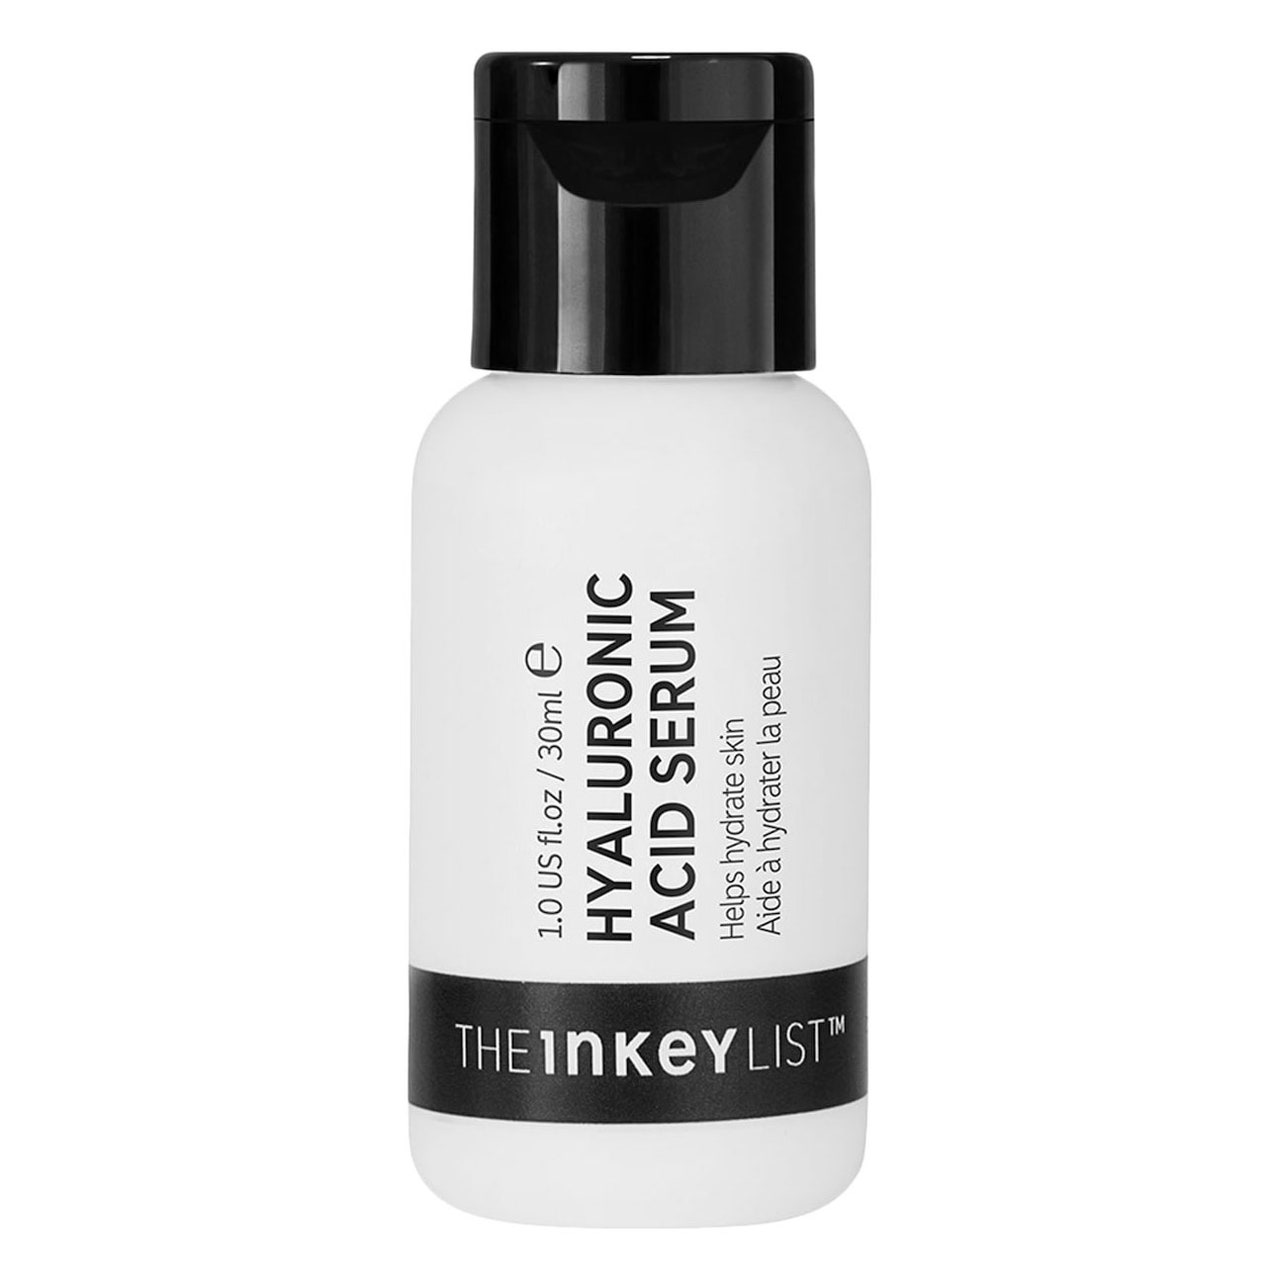 Weiße Flasche des Inkey List Hyaluronic Acid (HA) Hydrating Face Serum mit schwarzem Verschluss auf weißem Hintergrund